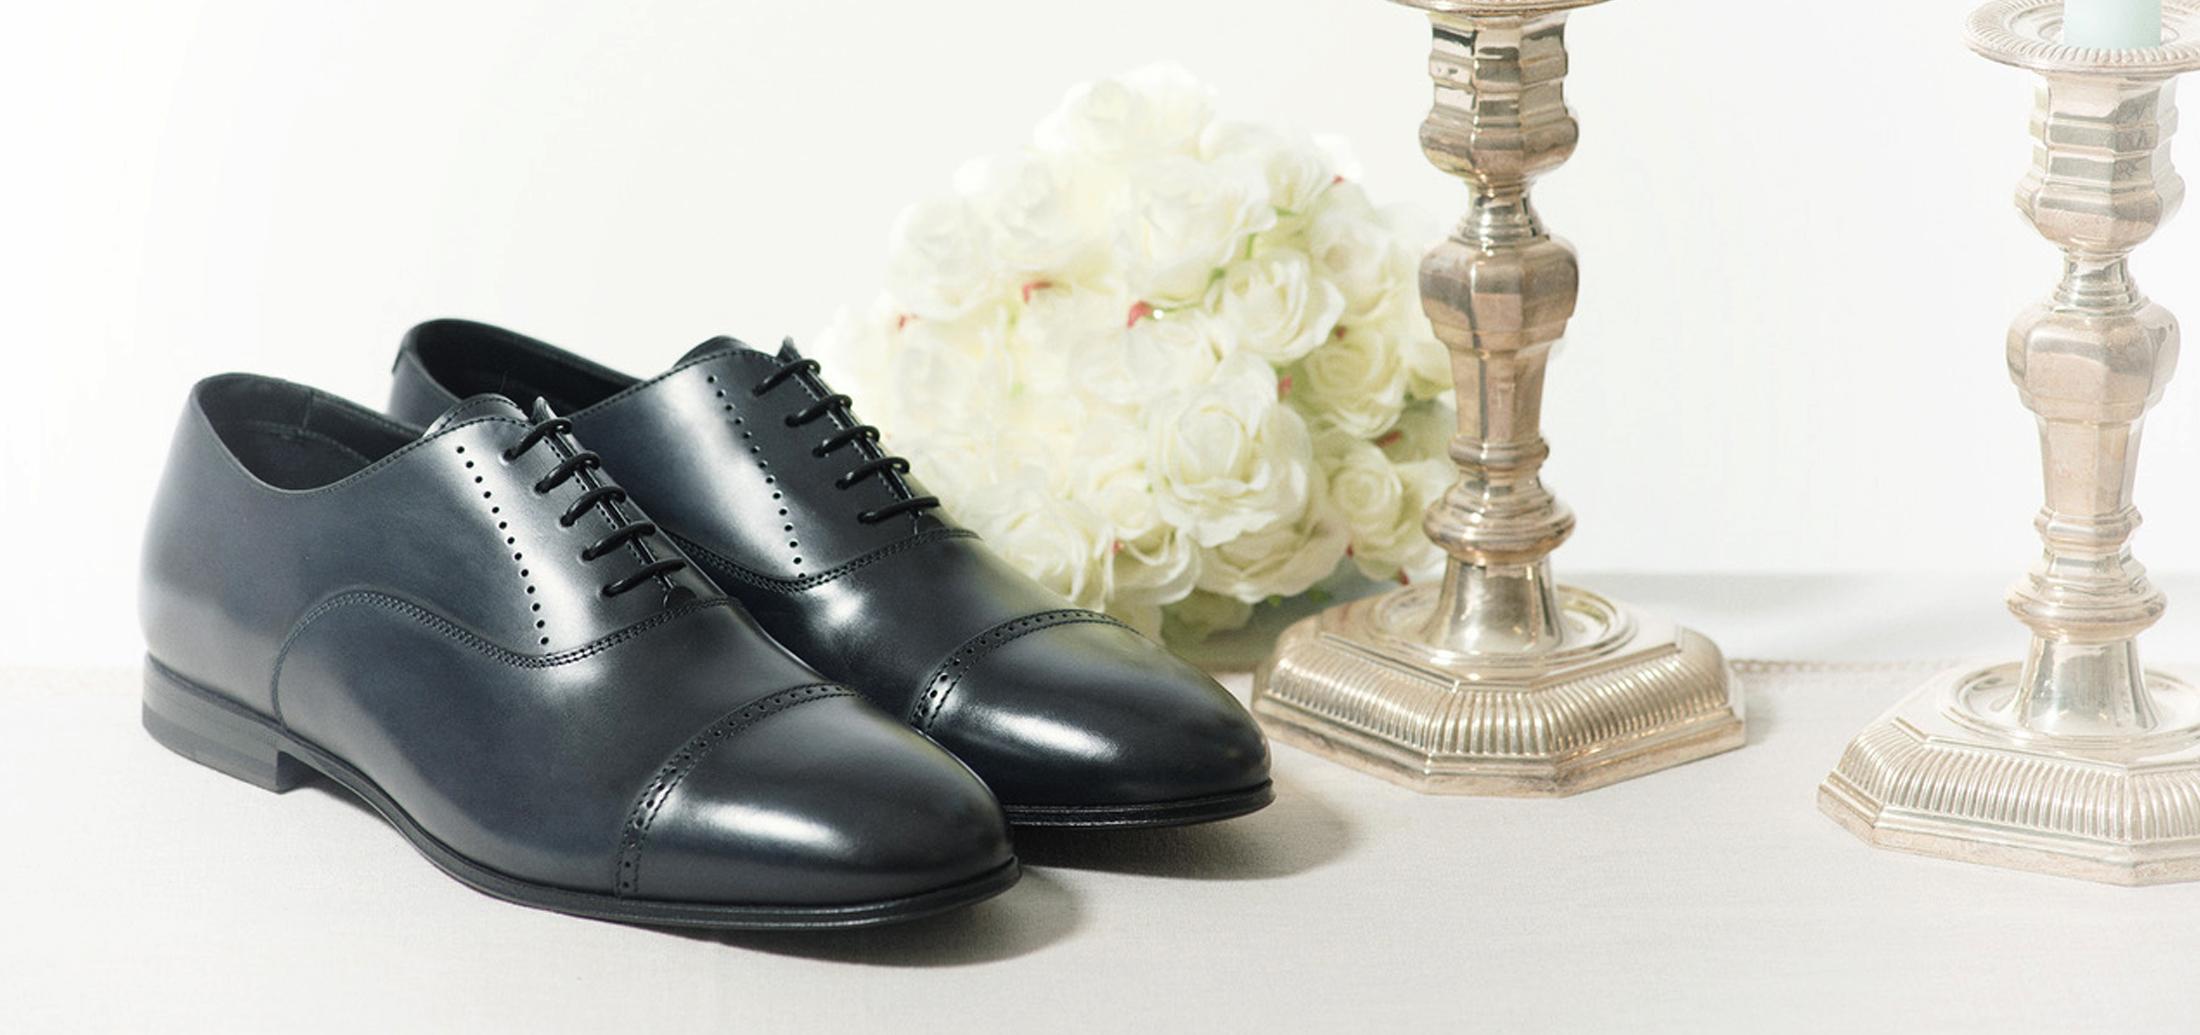 Scarpe eleganti da uomo, scarpe da cerimonia, scarpe classiche da uomo